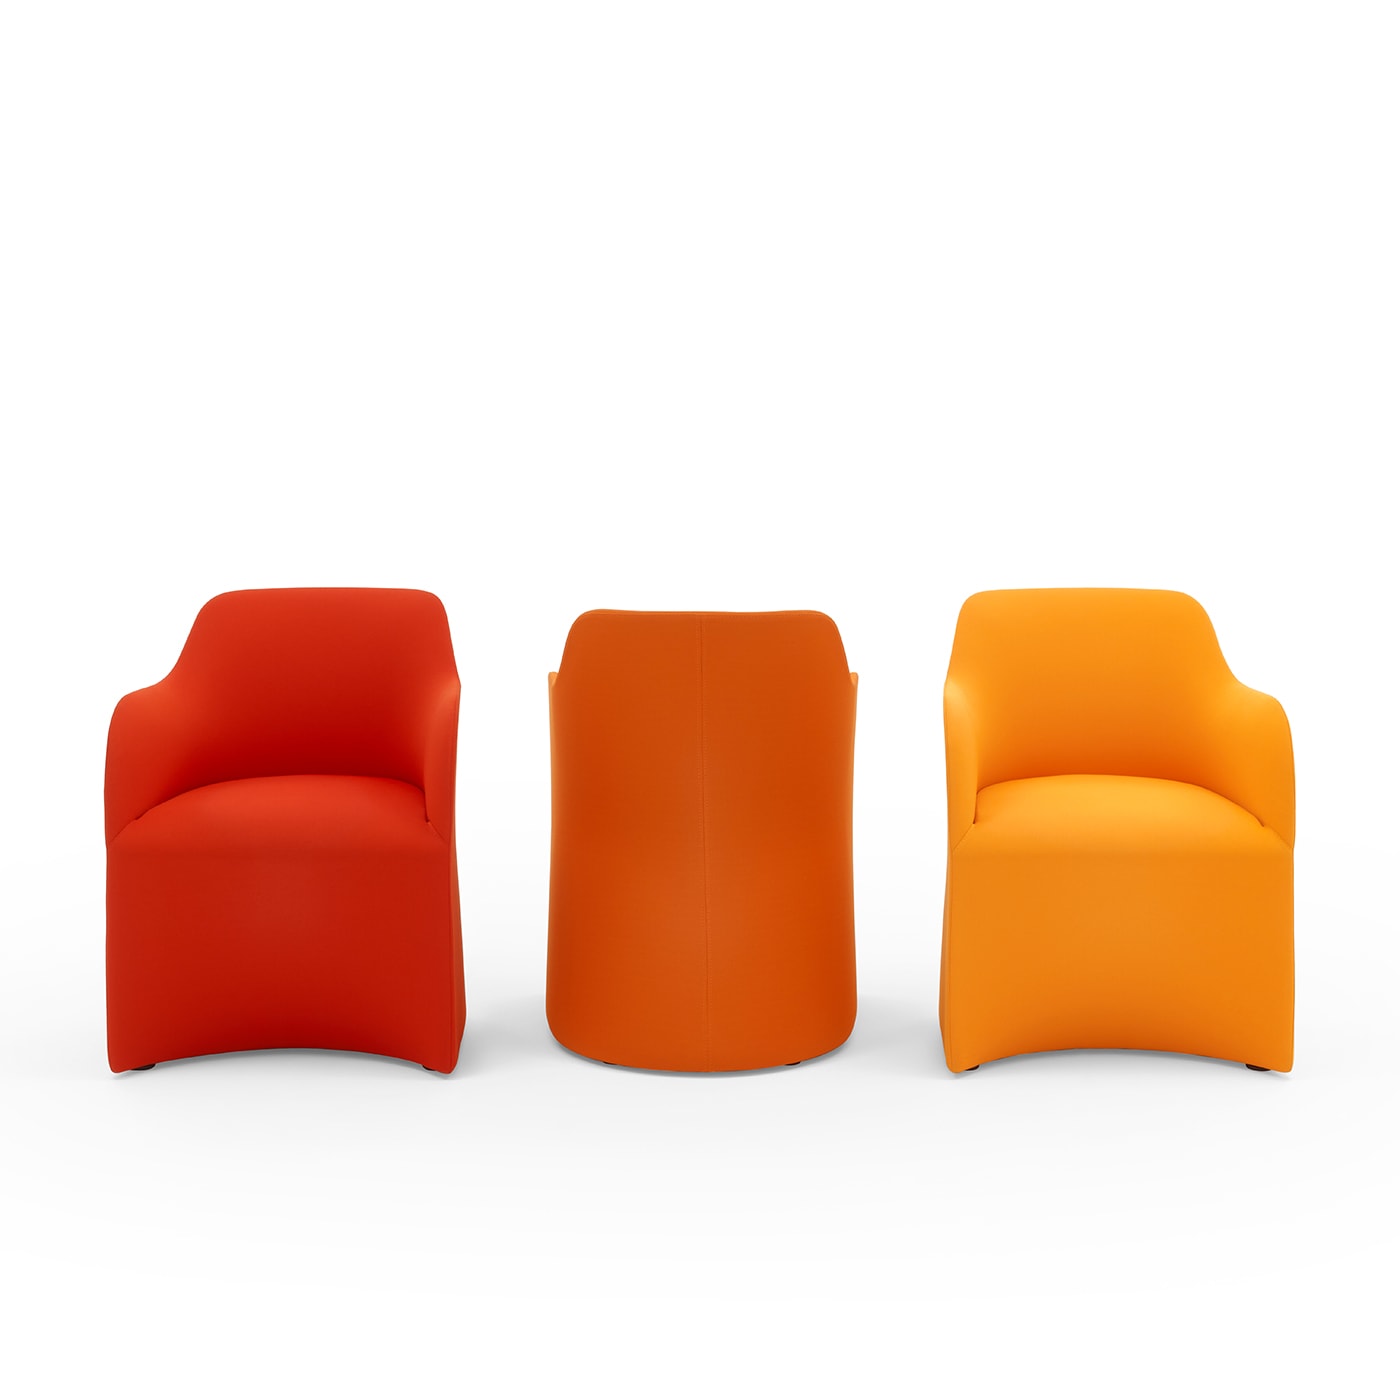 Maggy Big Orange Armchair by Basaglia + Rota Nodari - Viganò & C.